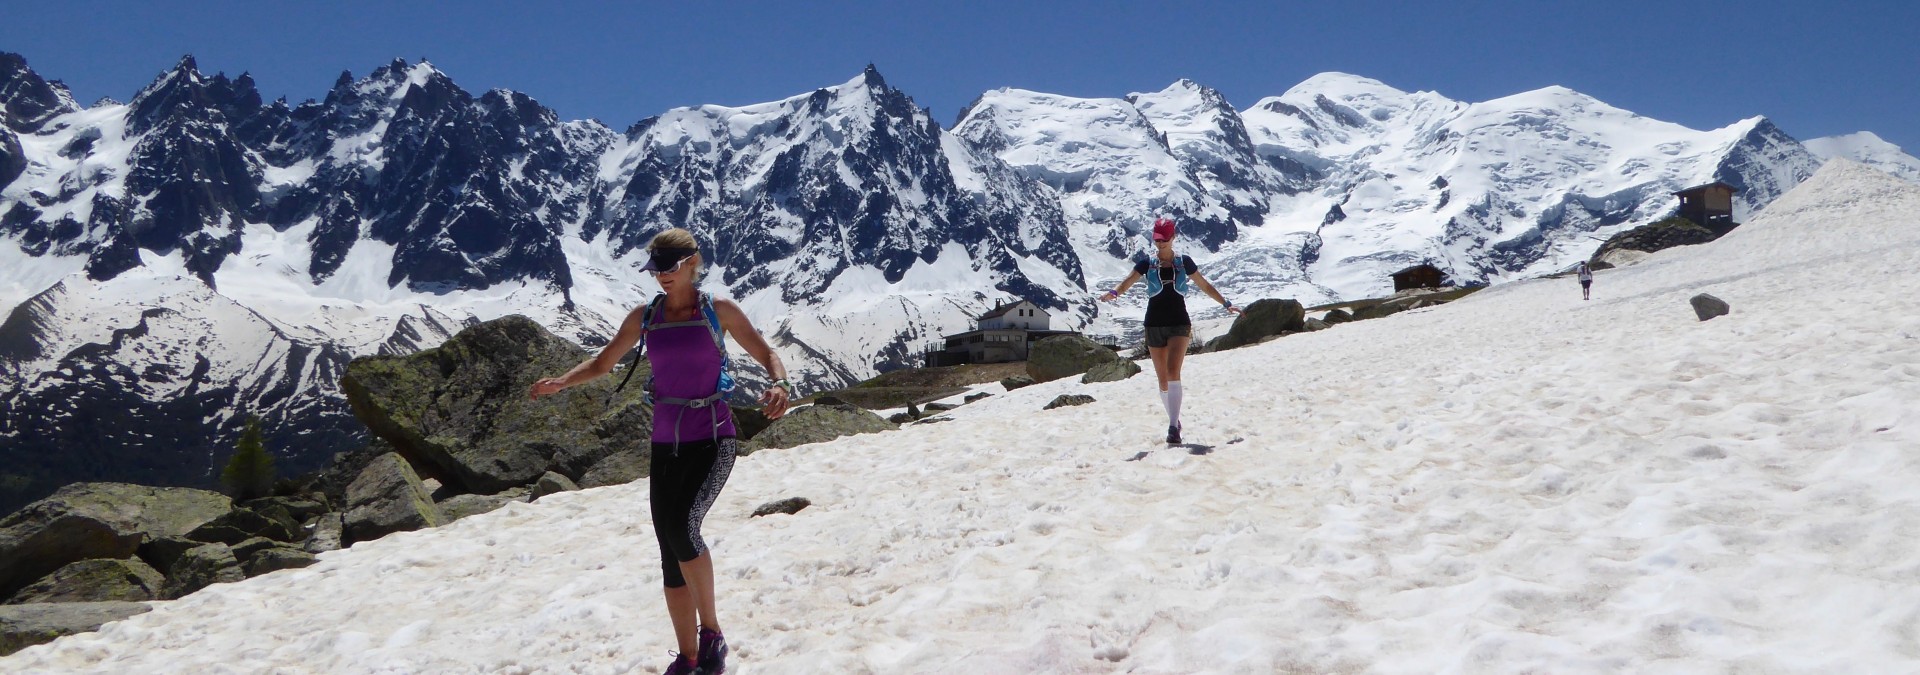 Trail run the Dolomites: Alta Via 1